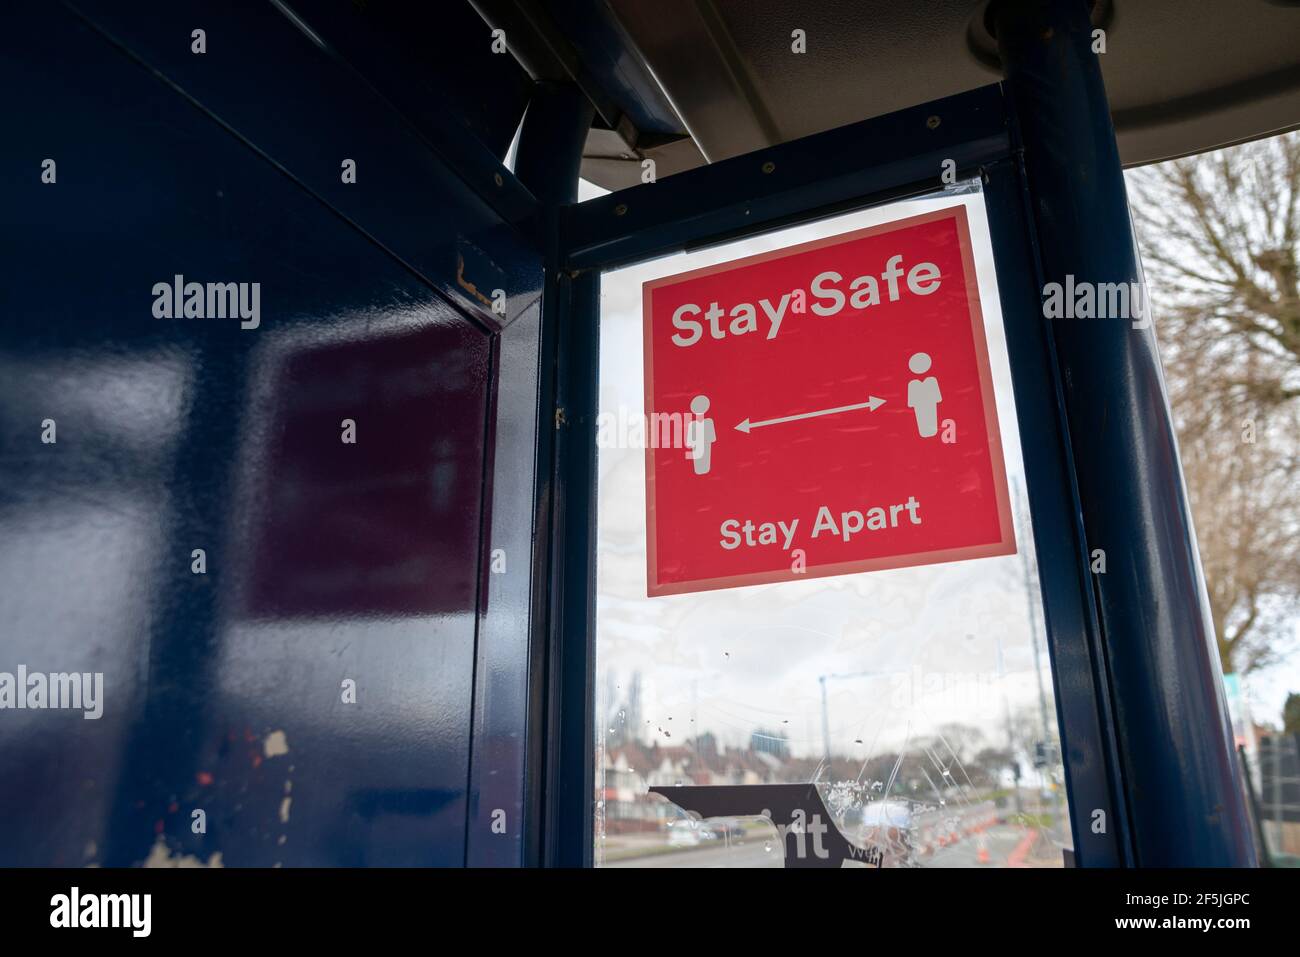 Stay Safe Stay Apart señal roja de distanciamiento social con dos caracteres blancos separados por una flecha de dos lados, en una ventana de parada de autobús en el Reino Unido Foto de stock